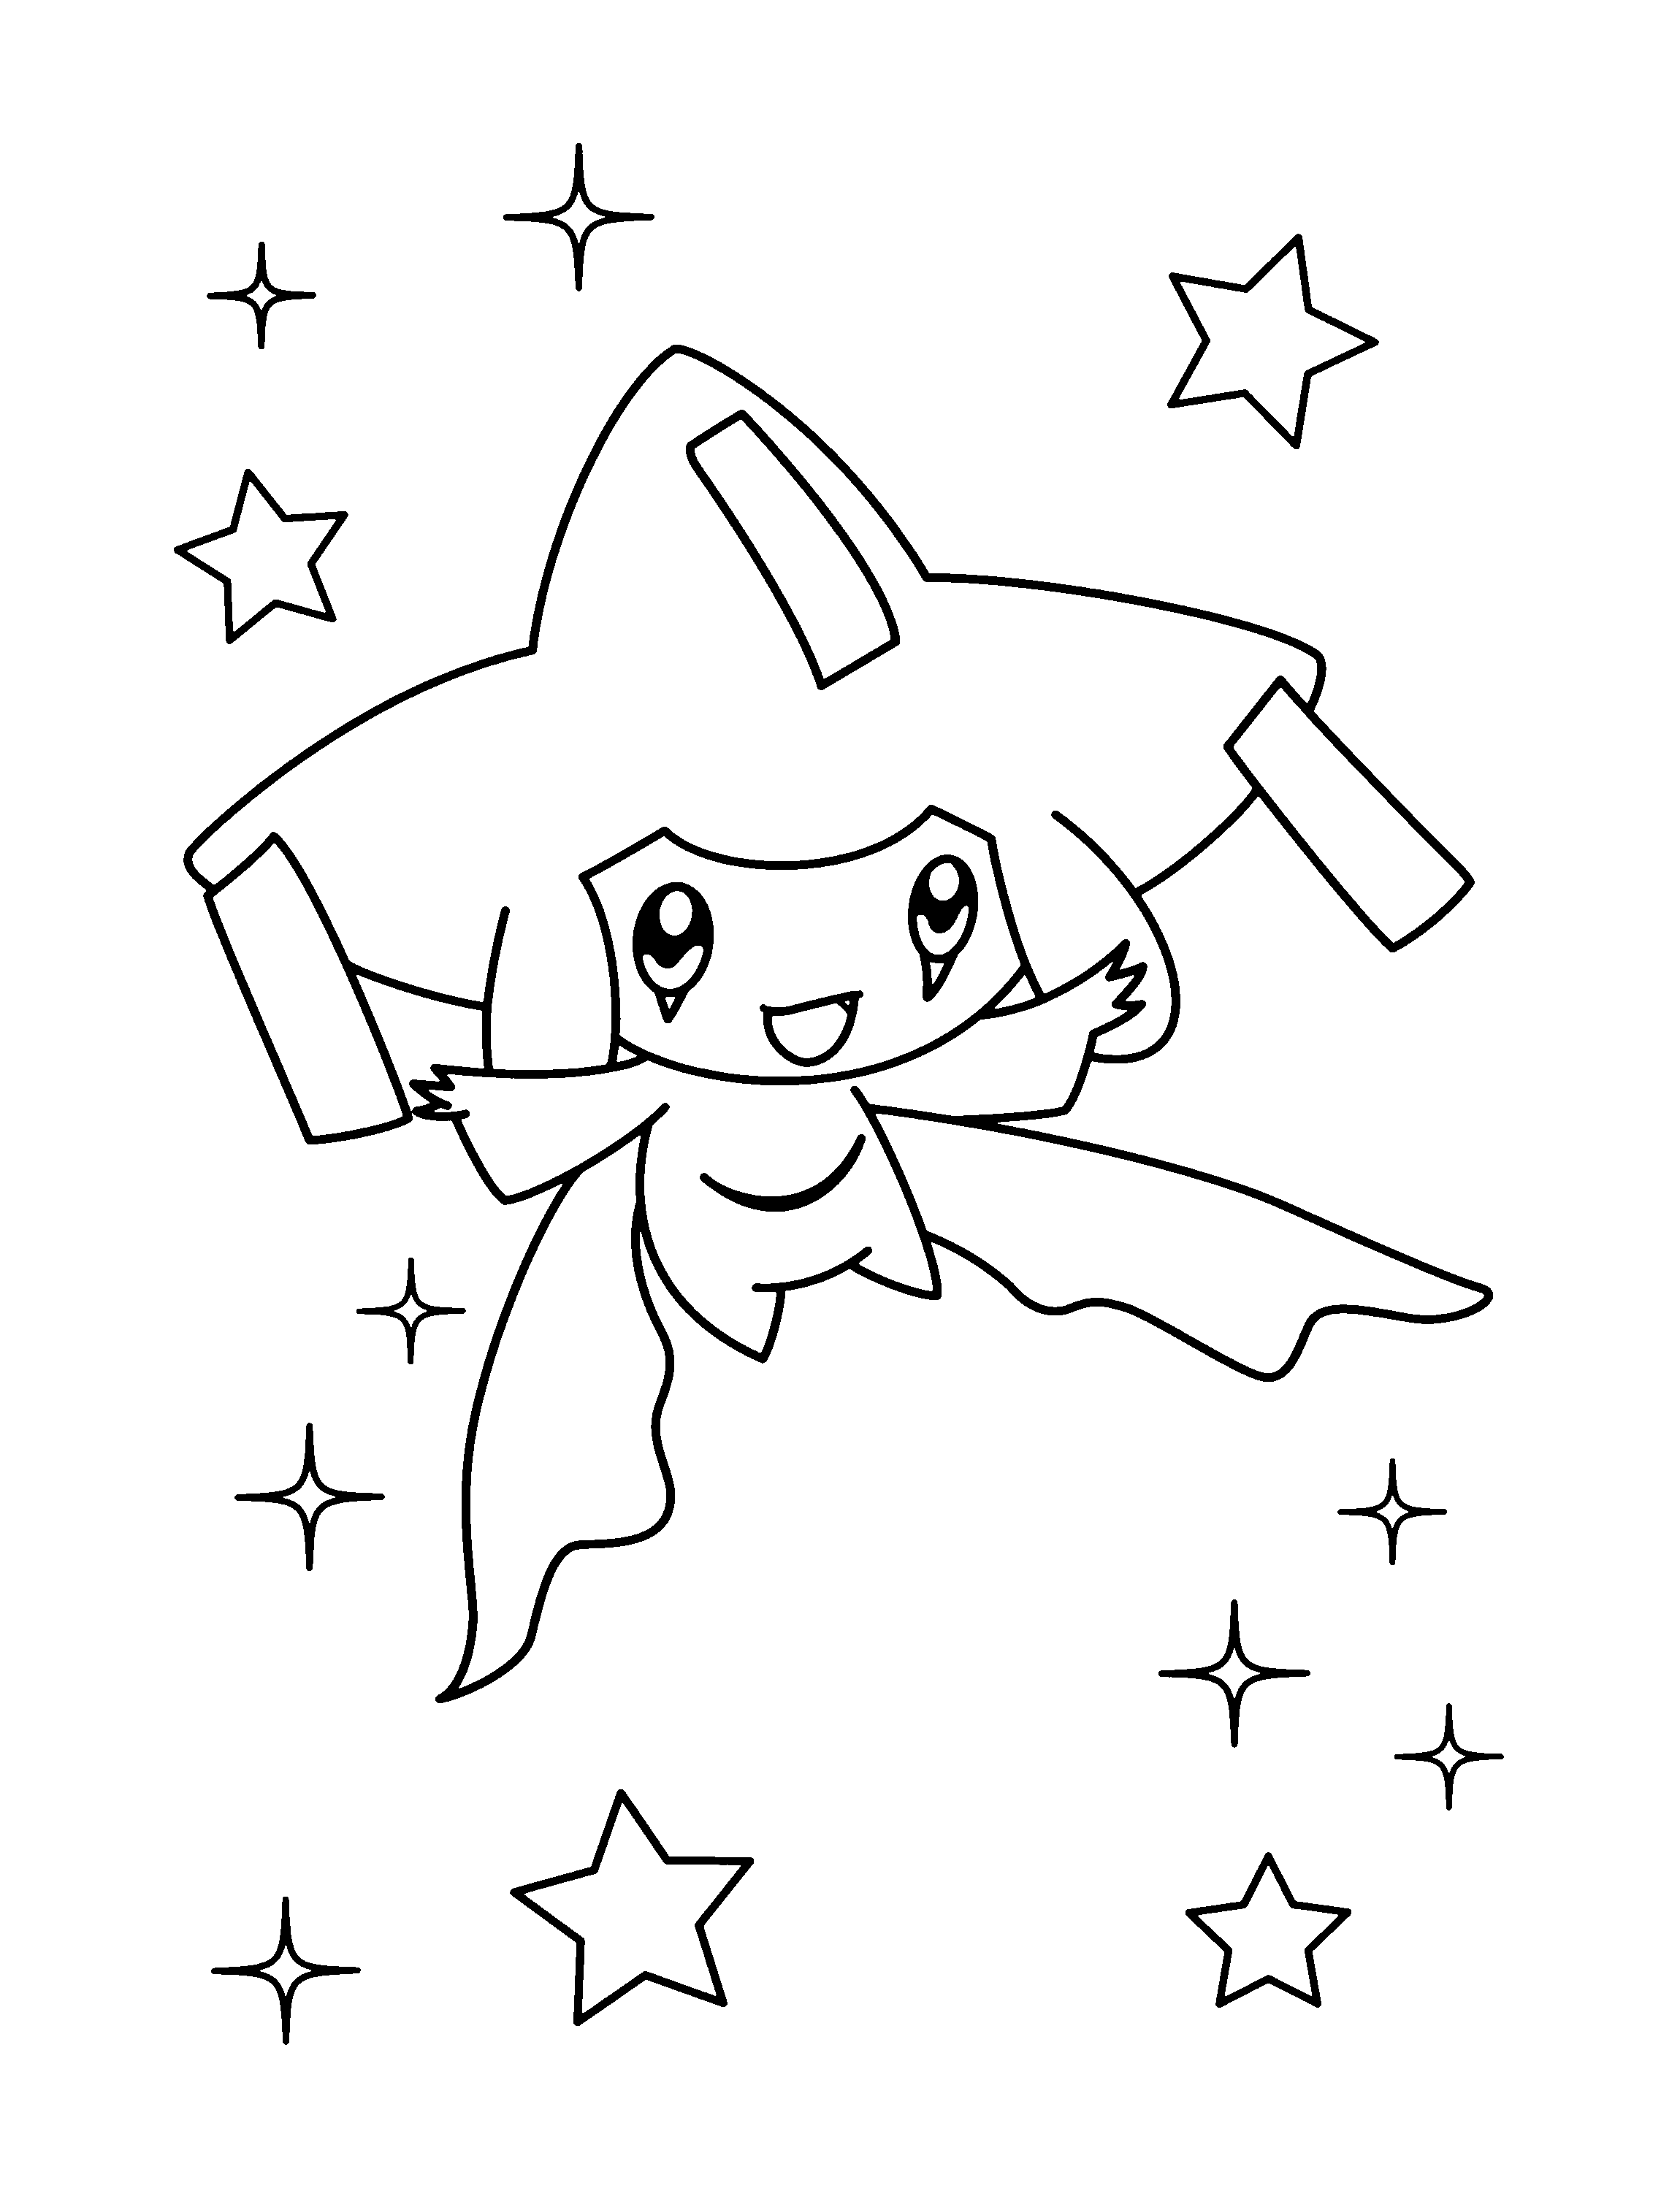 dibujo-para-colorear-pokemon-imagen-animada-0885